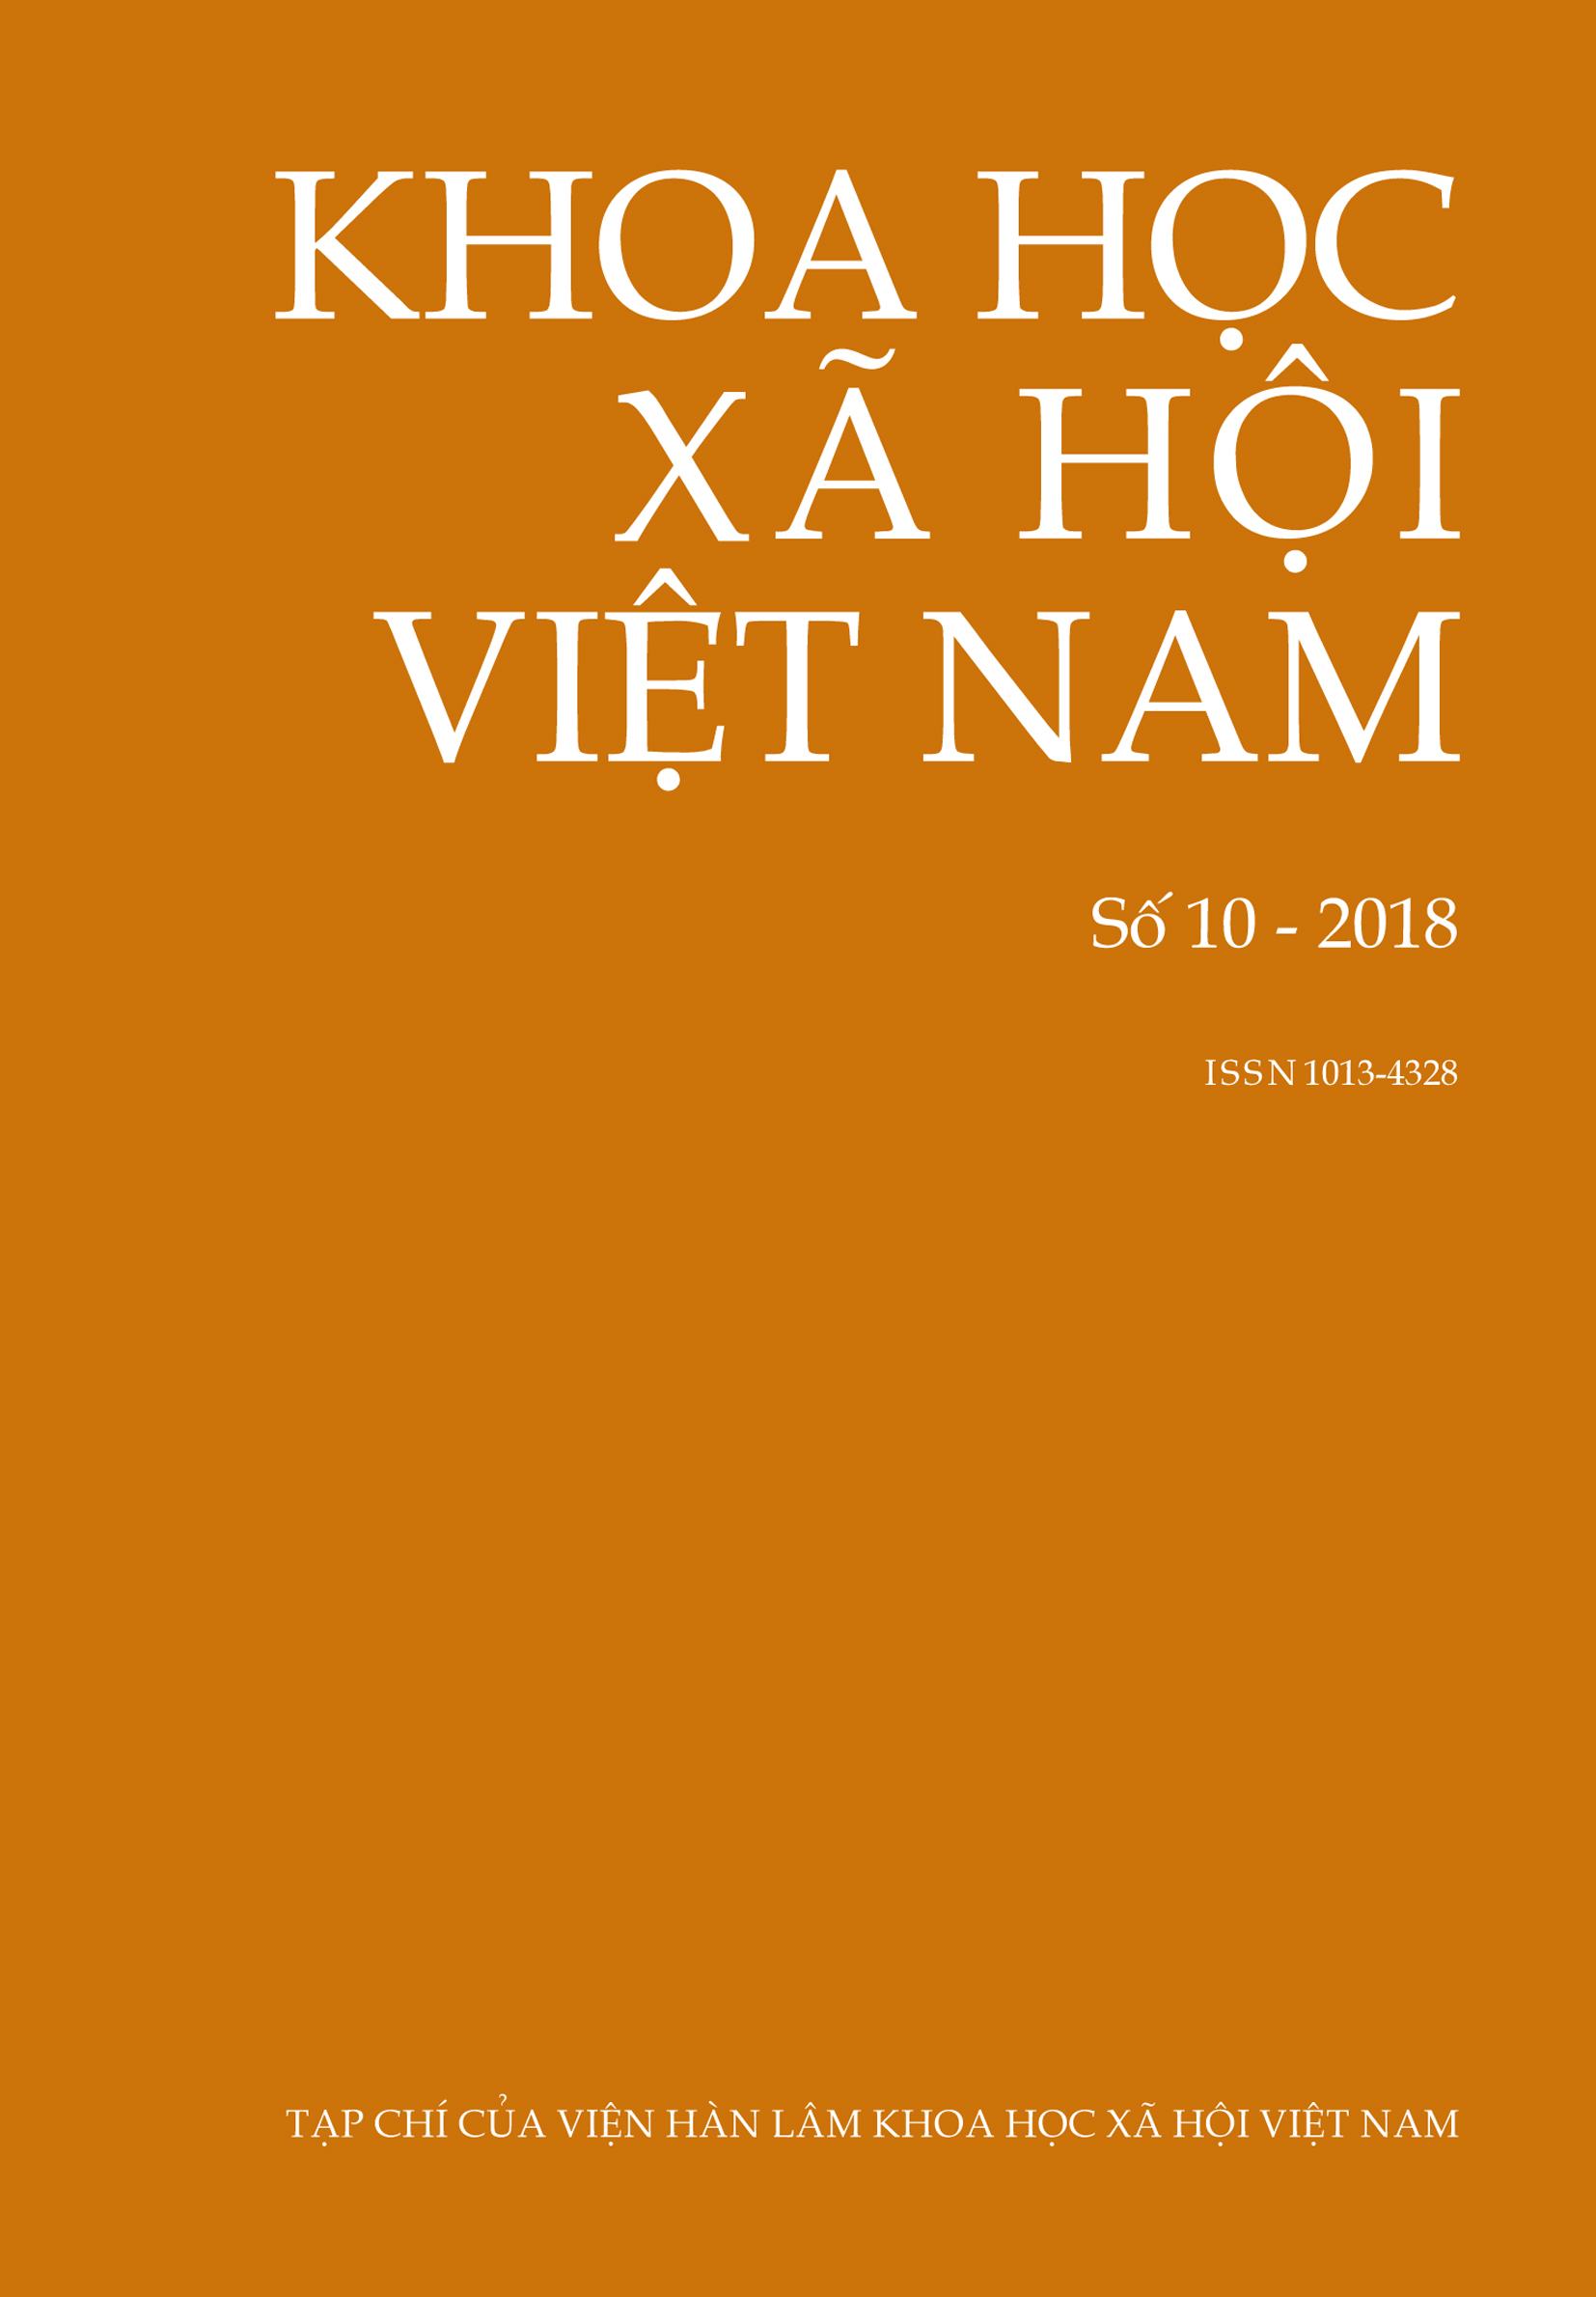 Khoa học xã hội Việt Nam. Số 10 - 2018